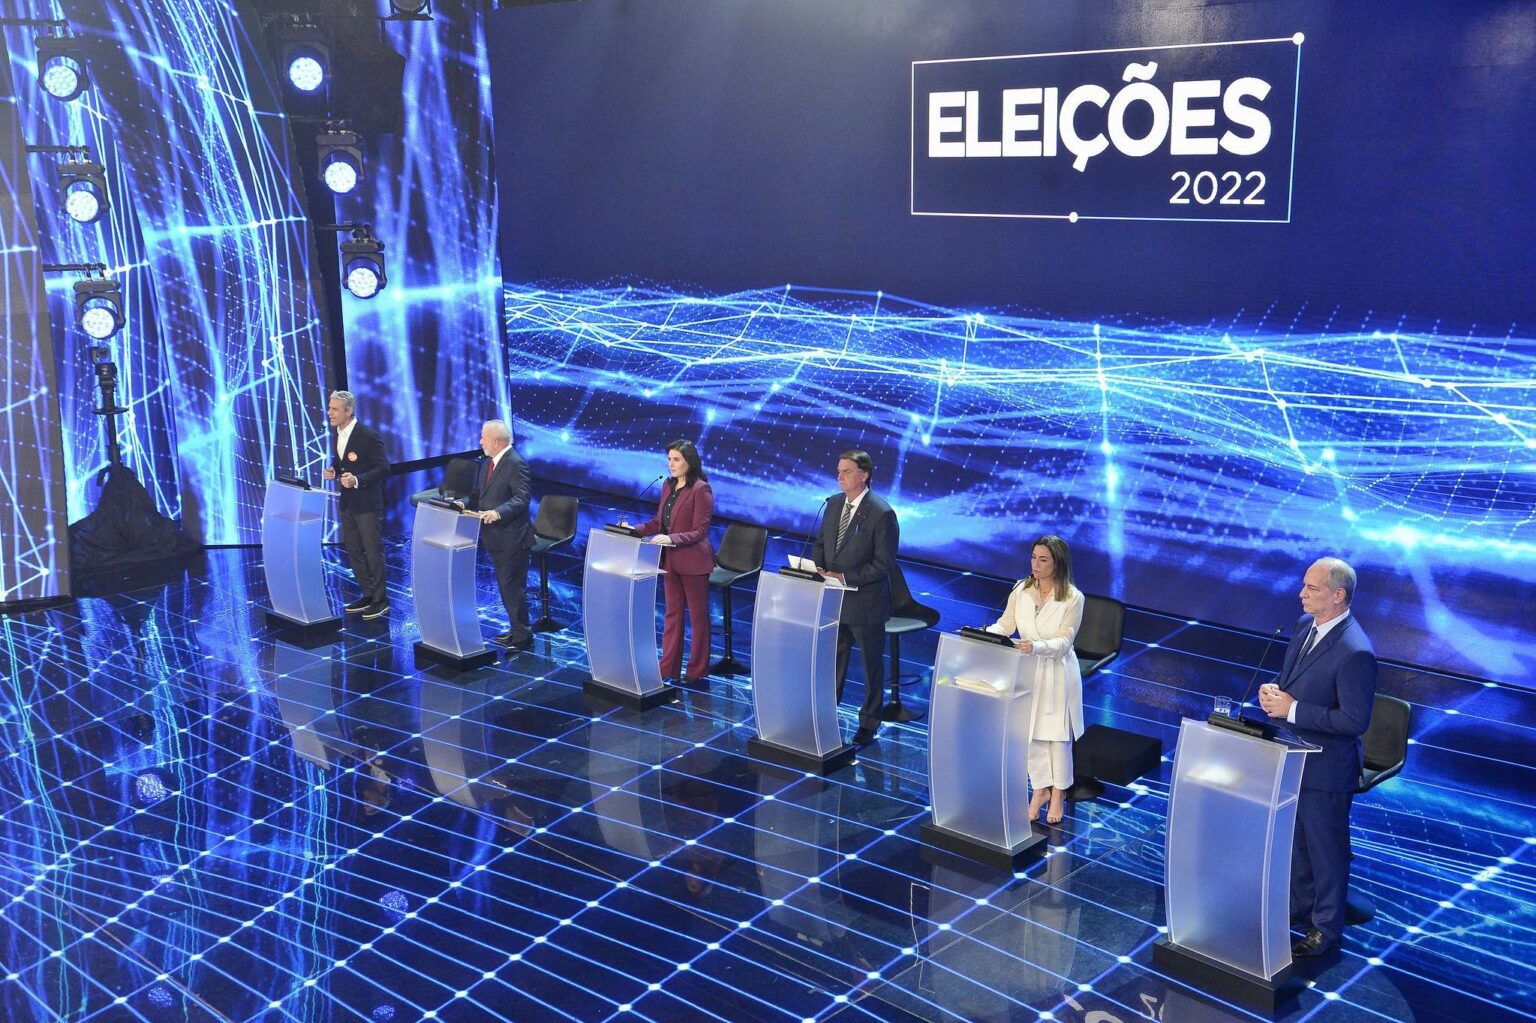 Hidrogênio verde na agenda dos presidenciáveis. Na imagem, candidatos à Presidência da República no debate eleitoral em 2022 (Foto: Reprodução Band)